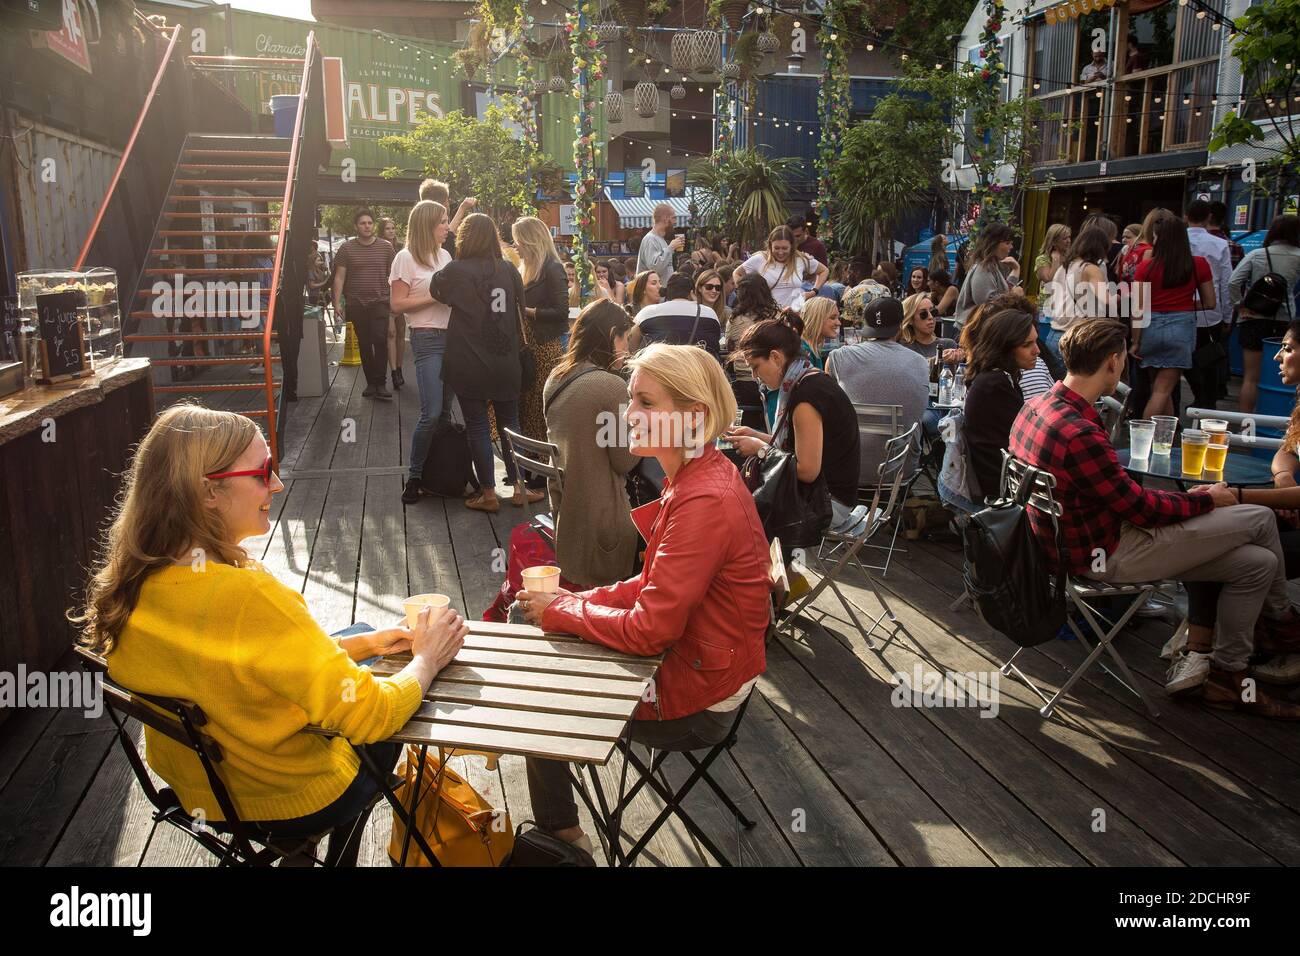 Le persone godono di un drink a Brixton pop, pop up contenitore bar e ristoranti a Brixton, London, Regno Unito Foto Stock